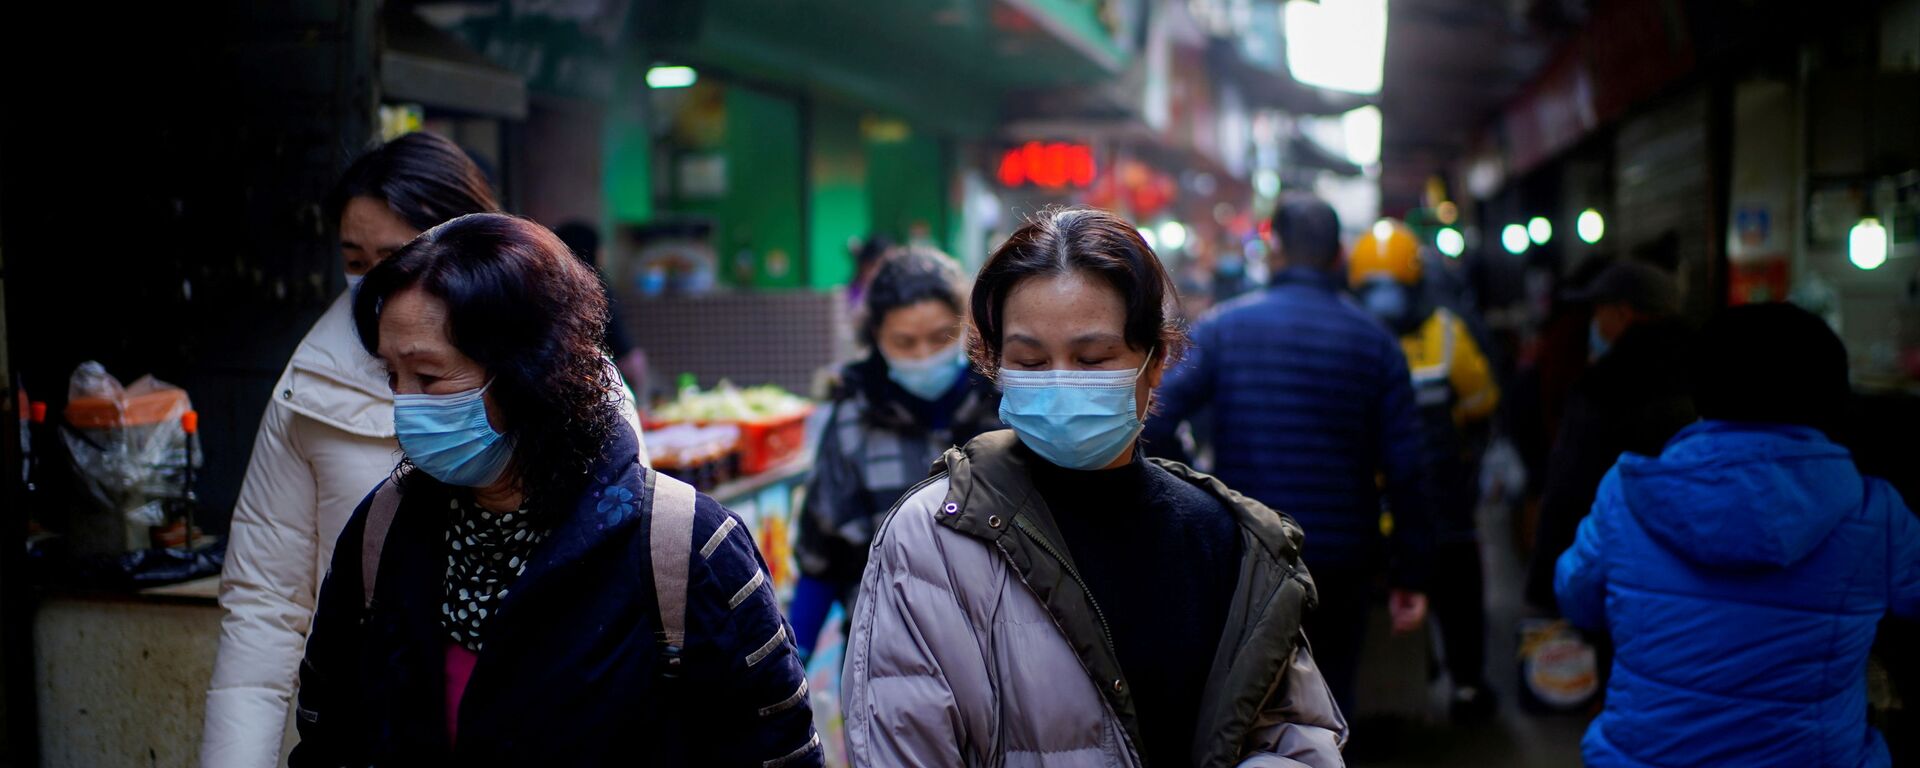 Pessoas usando máscaras andam em um mercado de rua nos primeiros meses do surto da doença coronavírus (COVID-19) em Wuhan, província de Hubei, China, 8 de fevereiro de 2021 - Sputnik Brasil, 1920, 29.10.2021